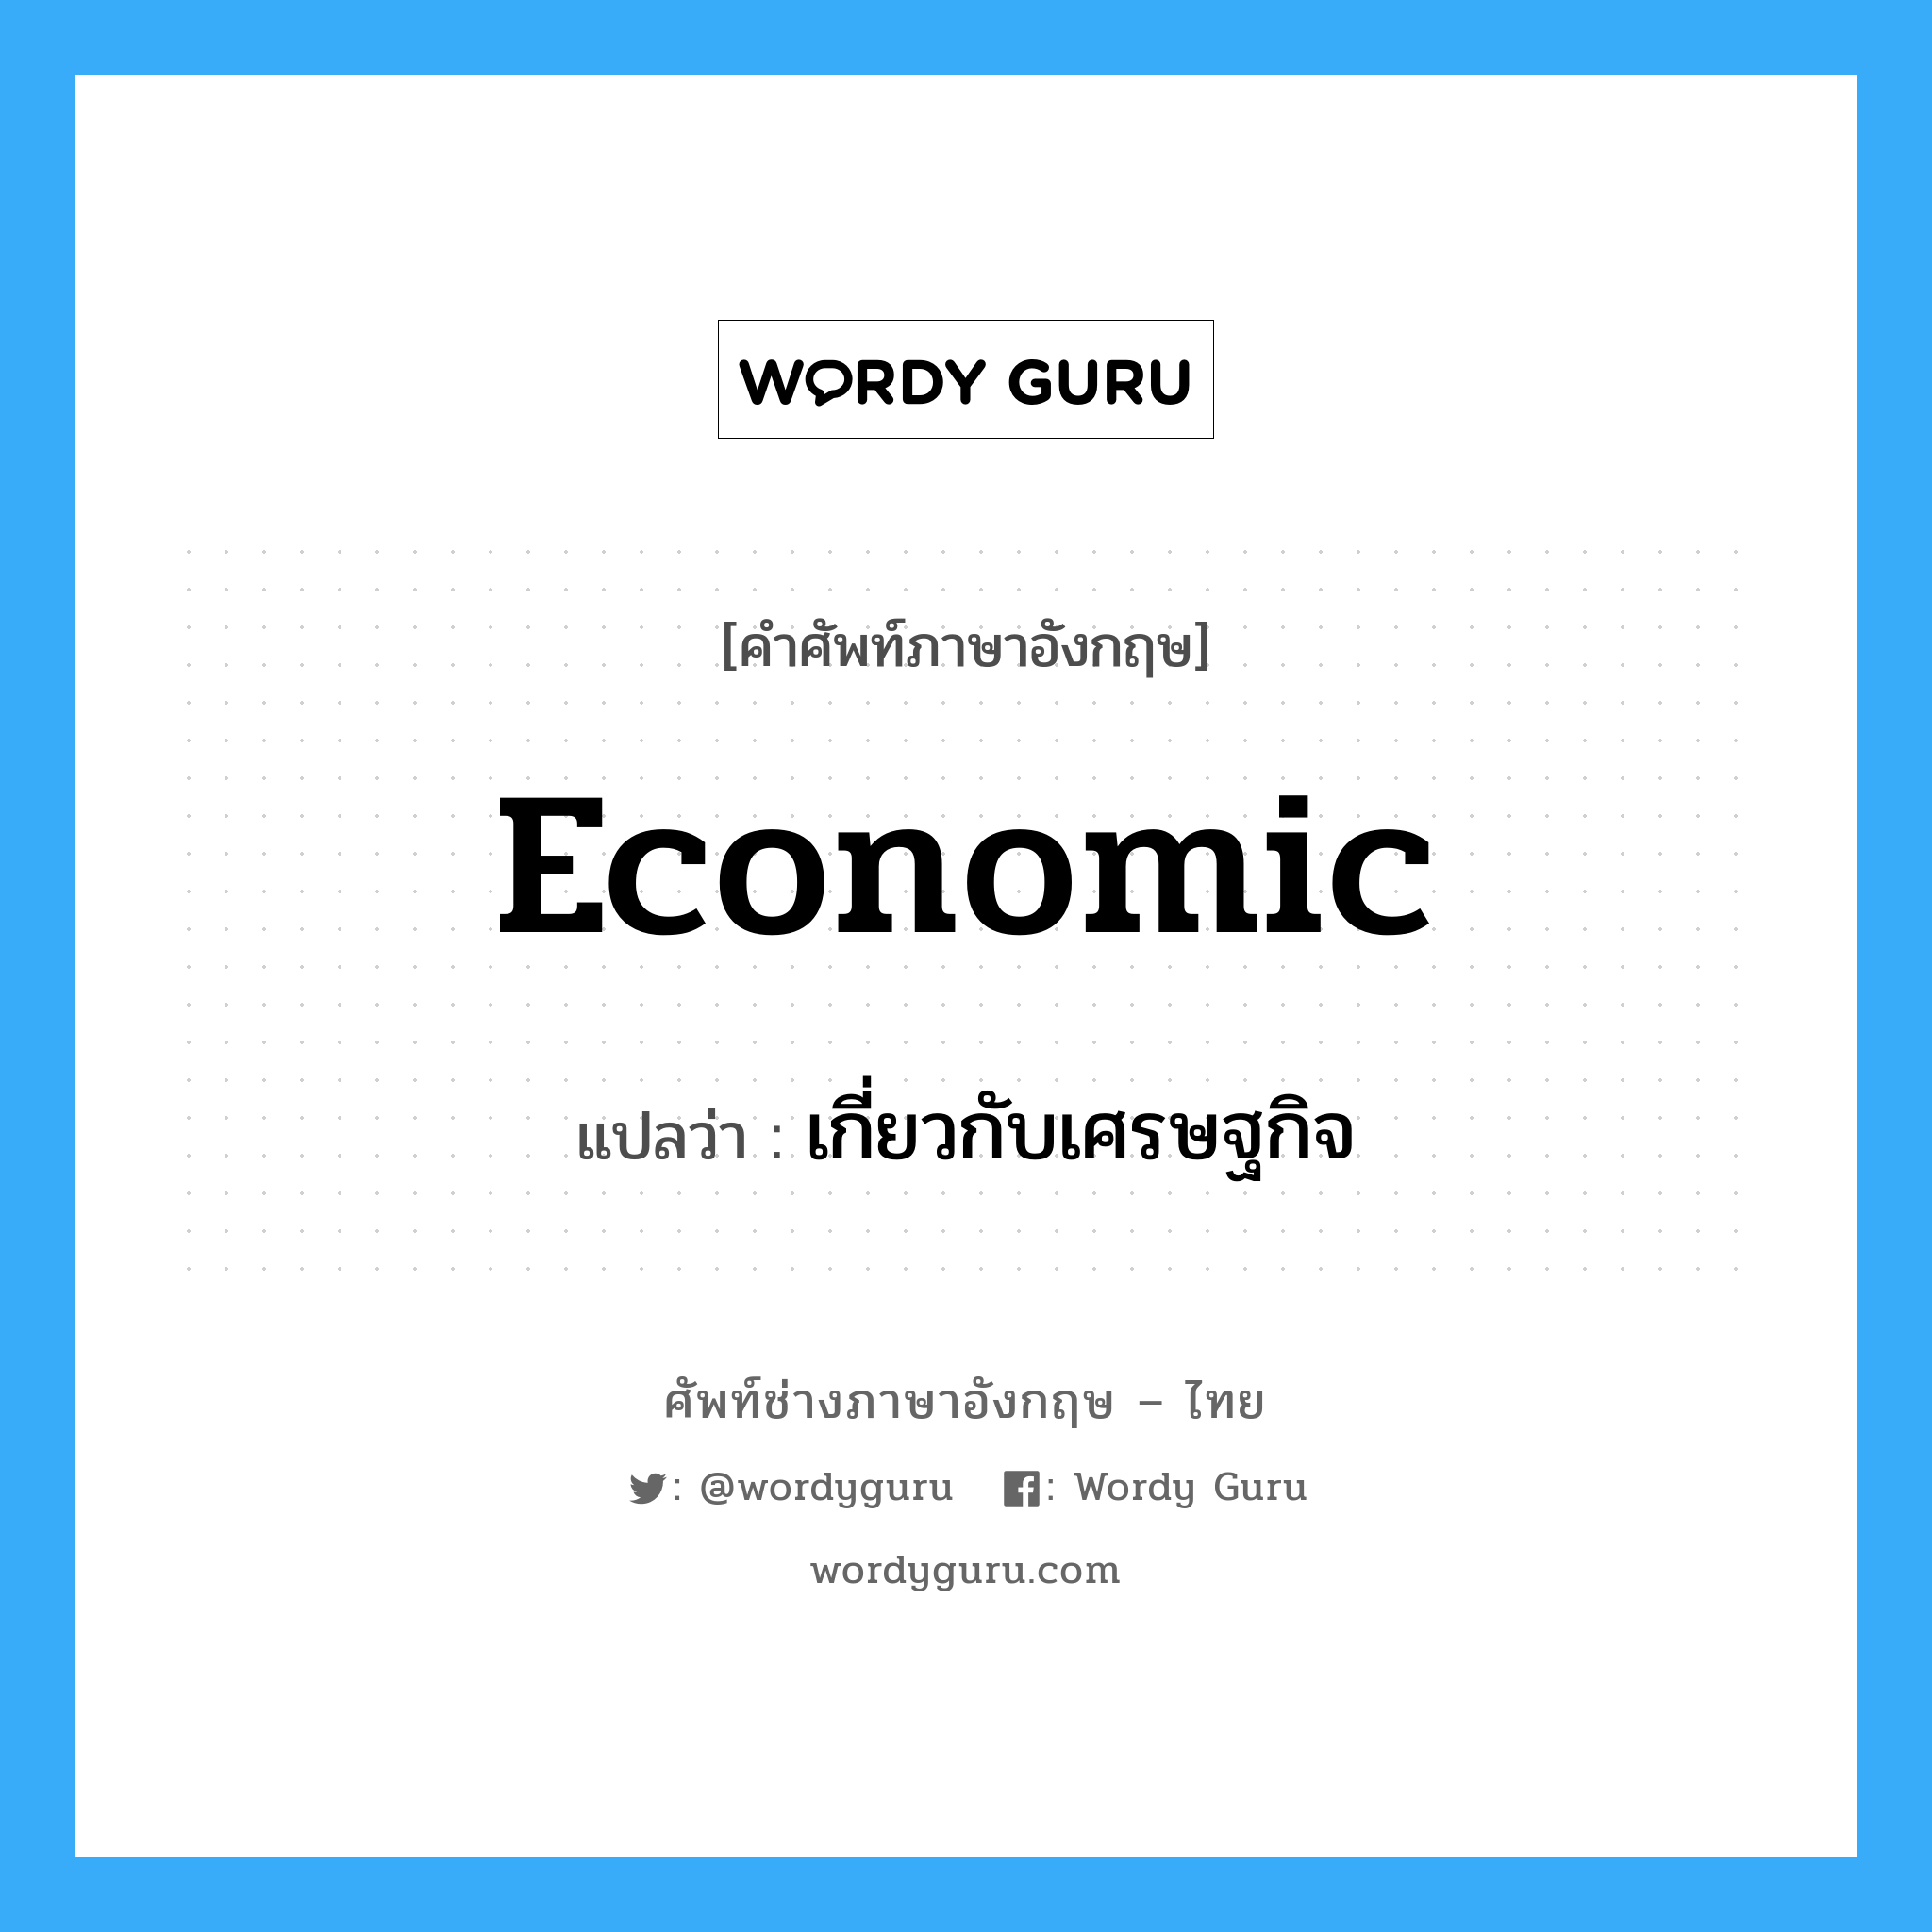 เกี่ยวกับเศรษฐกิจ ภาษาอังกฤษ?, คำศัพท์ช่างภาษาอังกฤษ - ไทย เกี่ยวกับเศรษฐกิจ คำศัพท์ภาษาอังกฤษ เกี่ยวกับเศรษฐกิจ แปลว่า economic